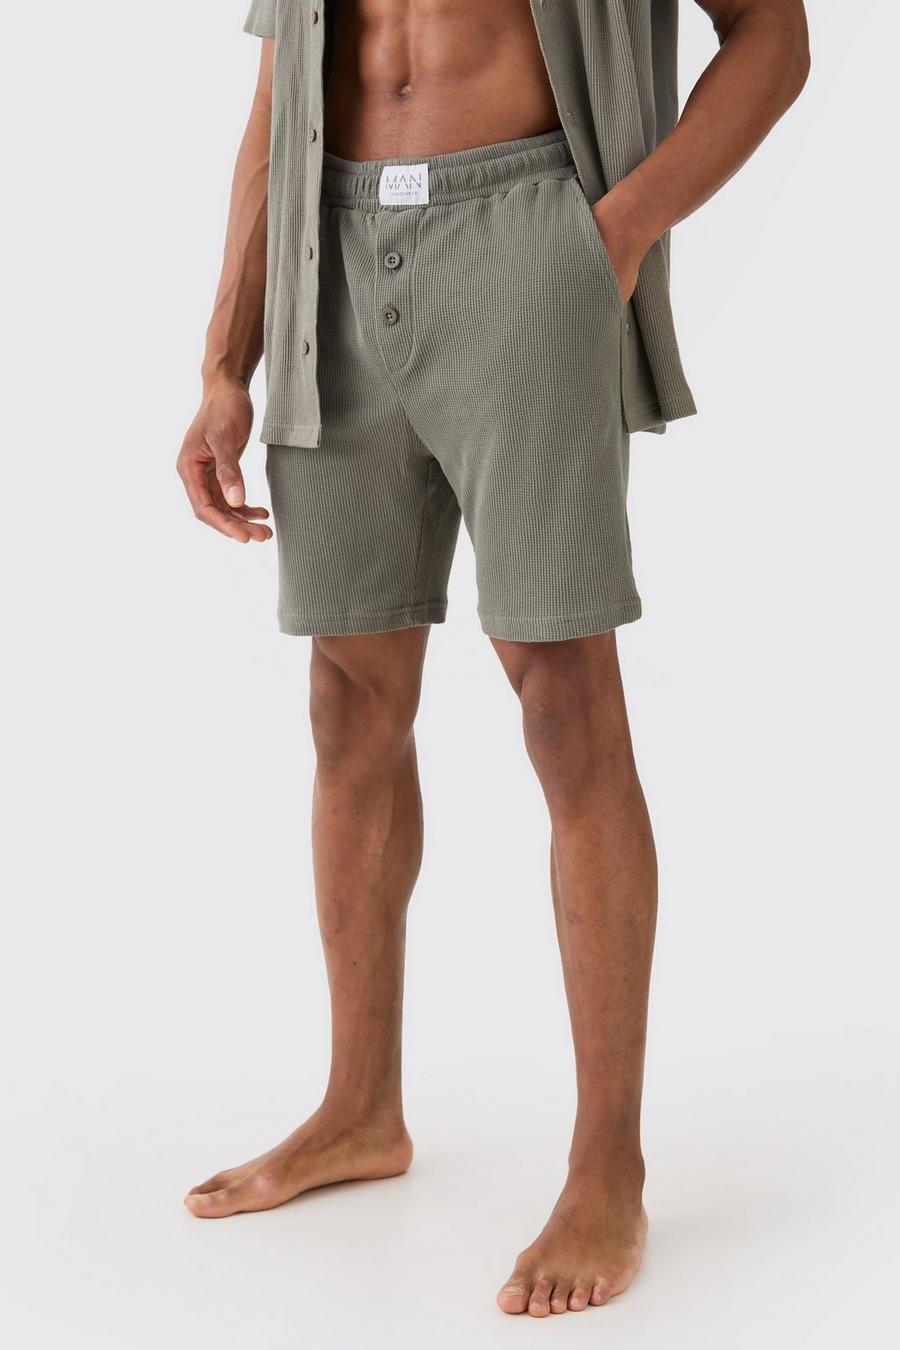 Pantalones cortos para estar en casa de tela gofre en color caqui, Khaki